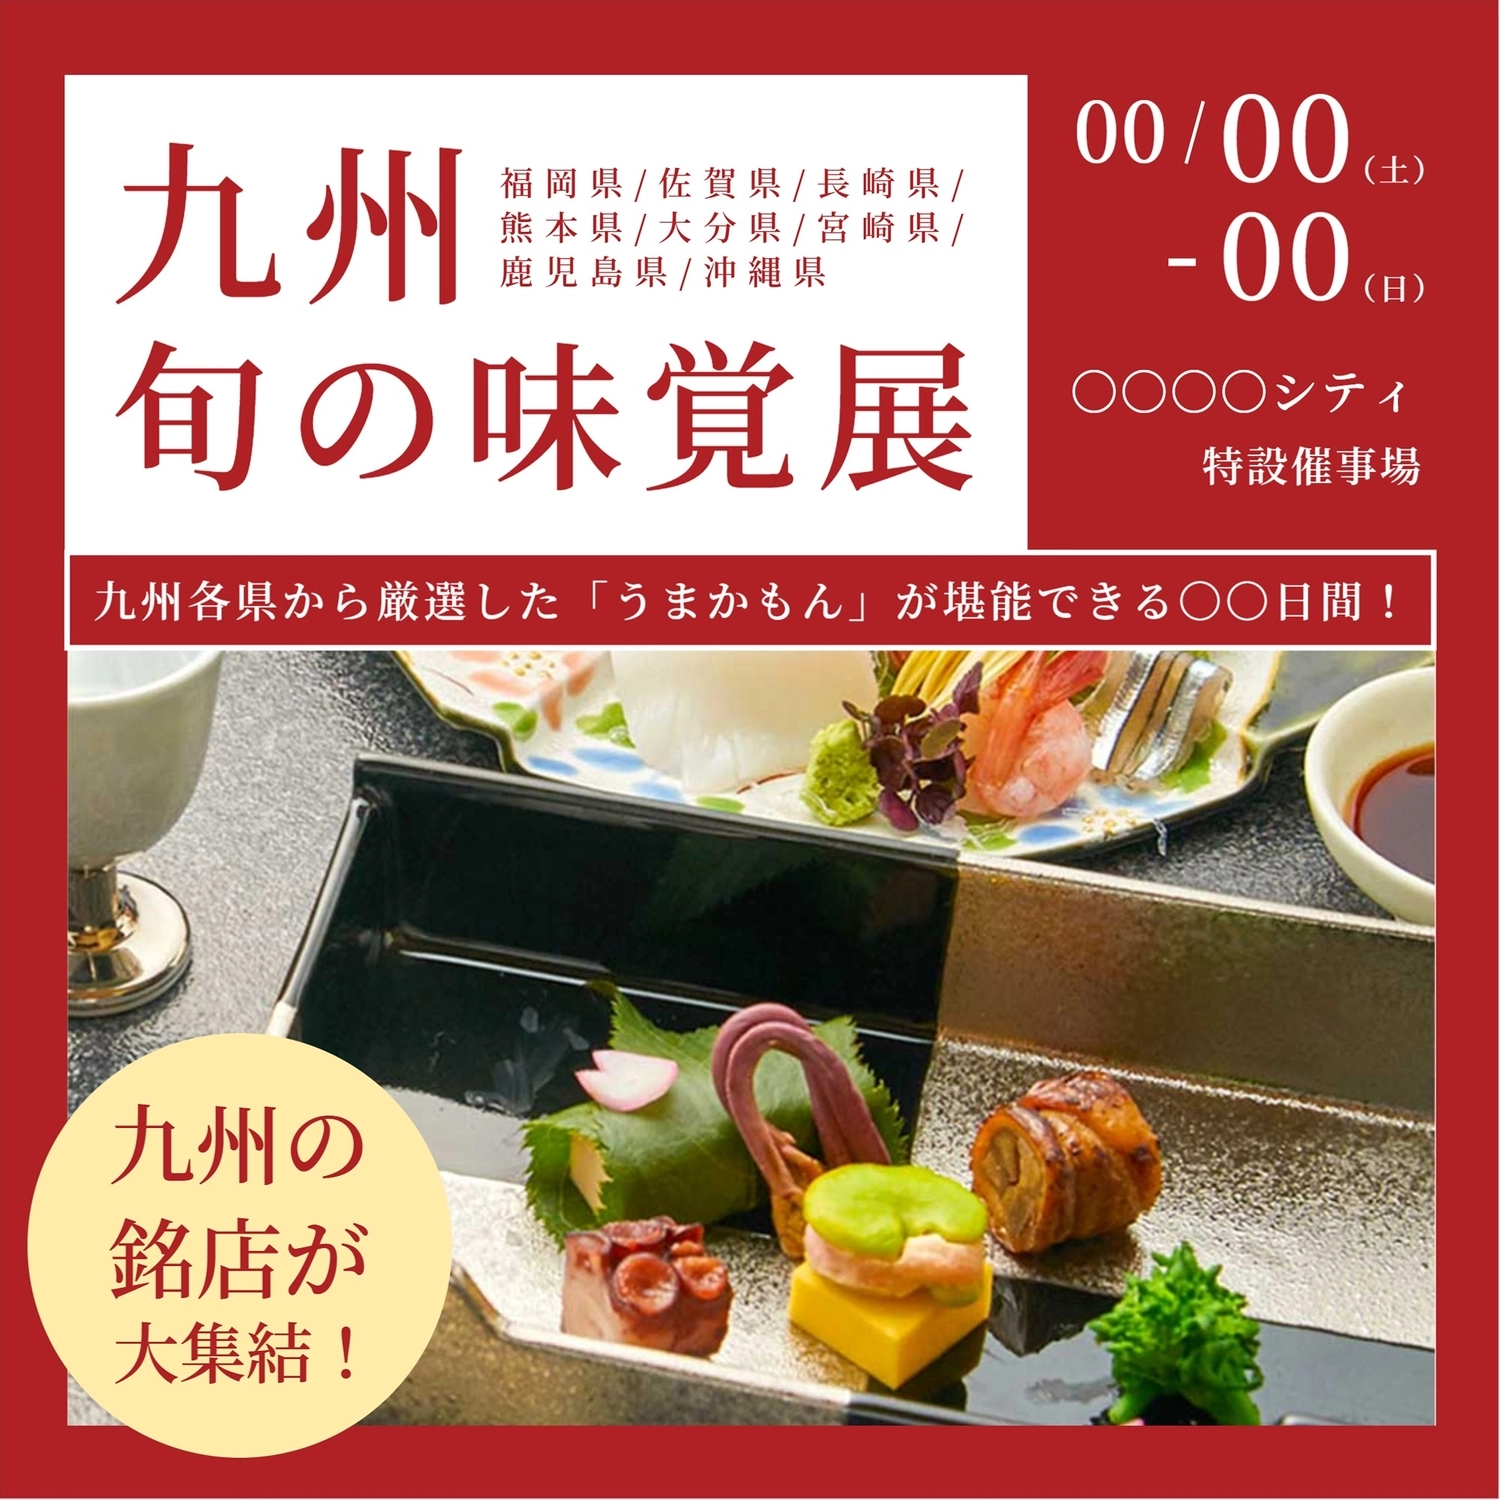 九州物産展テンプレート, Mingdian, triển lãm sản phẩm, sashimi, Instagram Post mẫu